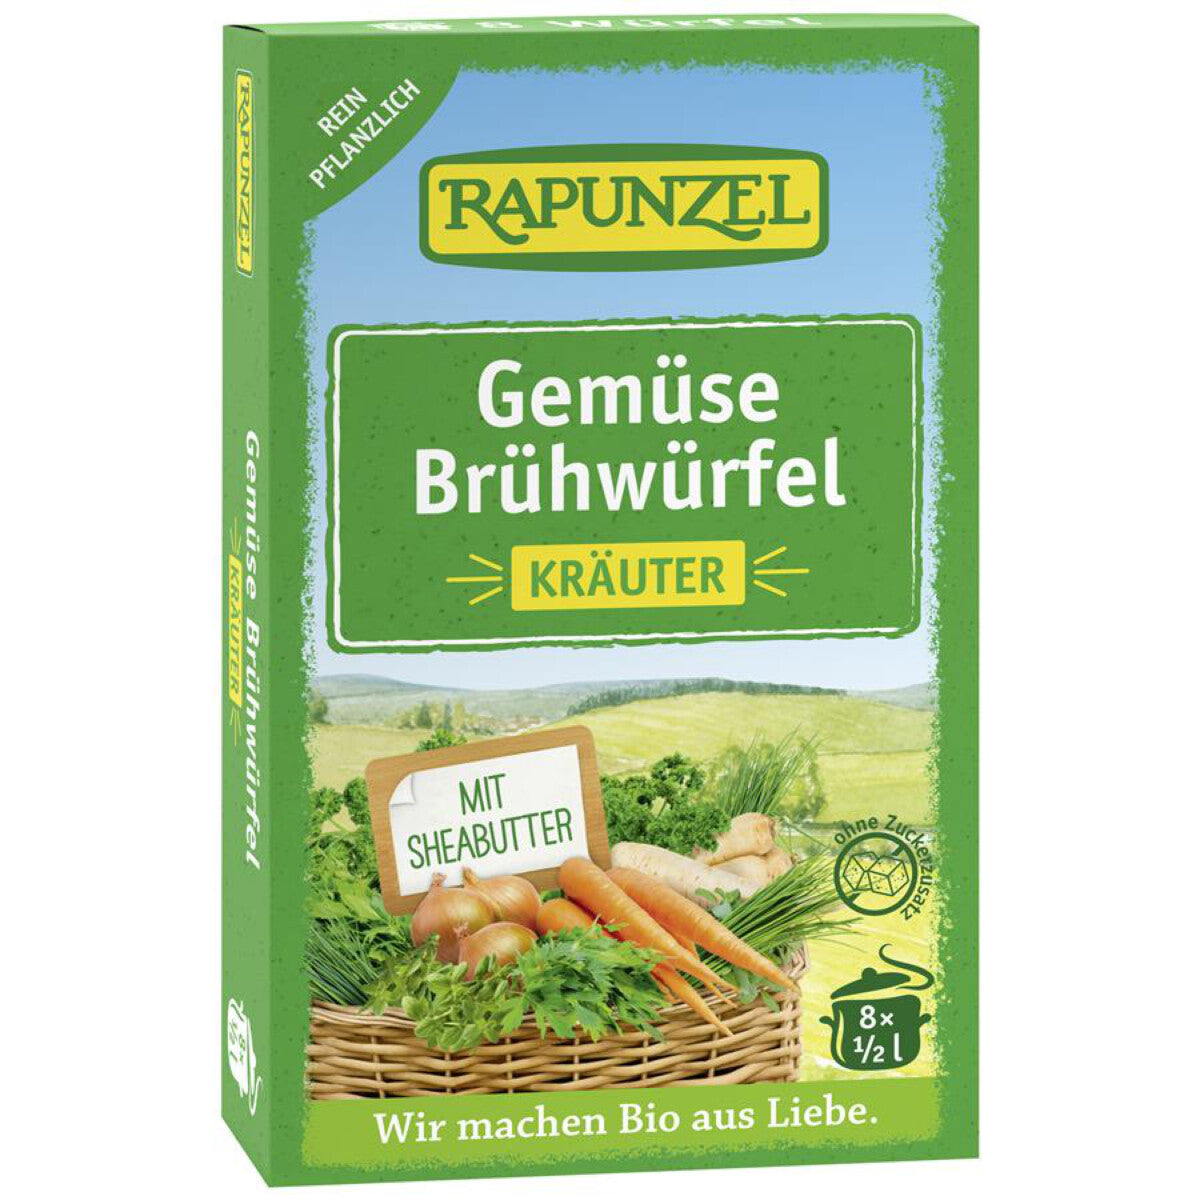 RAPUNZEL Gemüse Brühwürfel mit Kräutern – 8 Stk